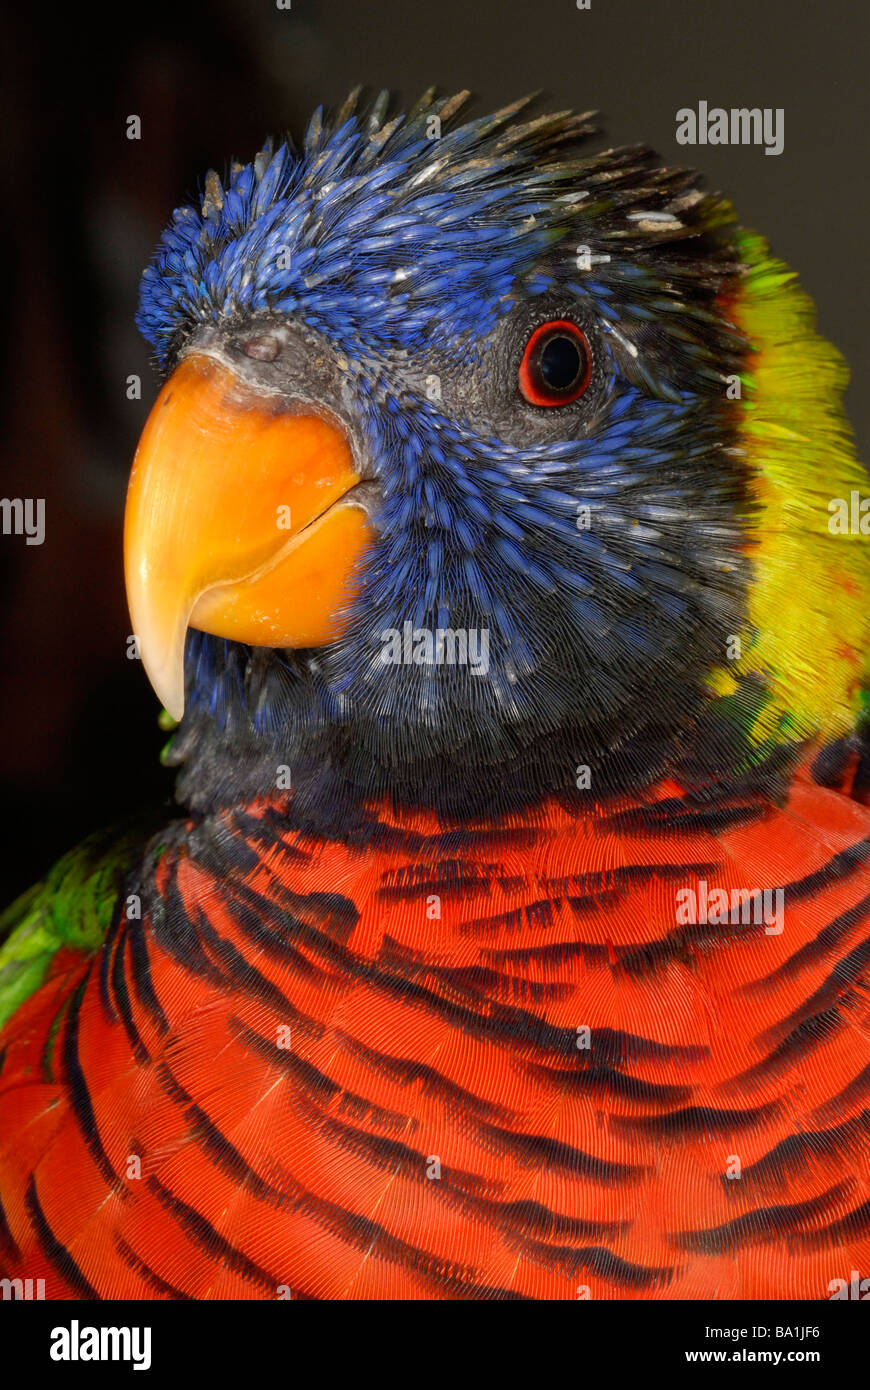 Close up of lorikeet bird Stock Photo